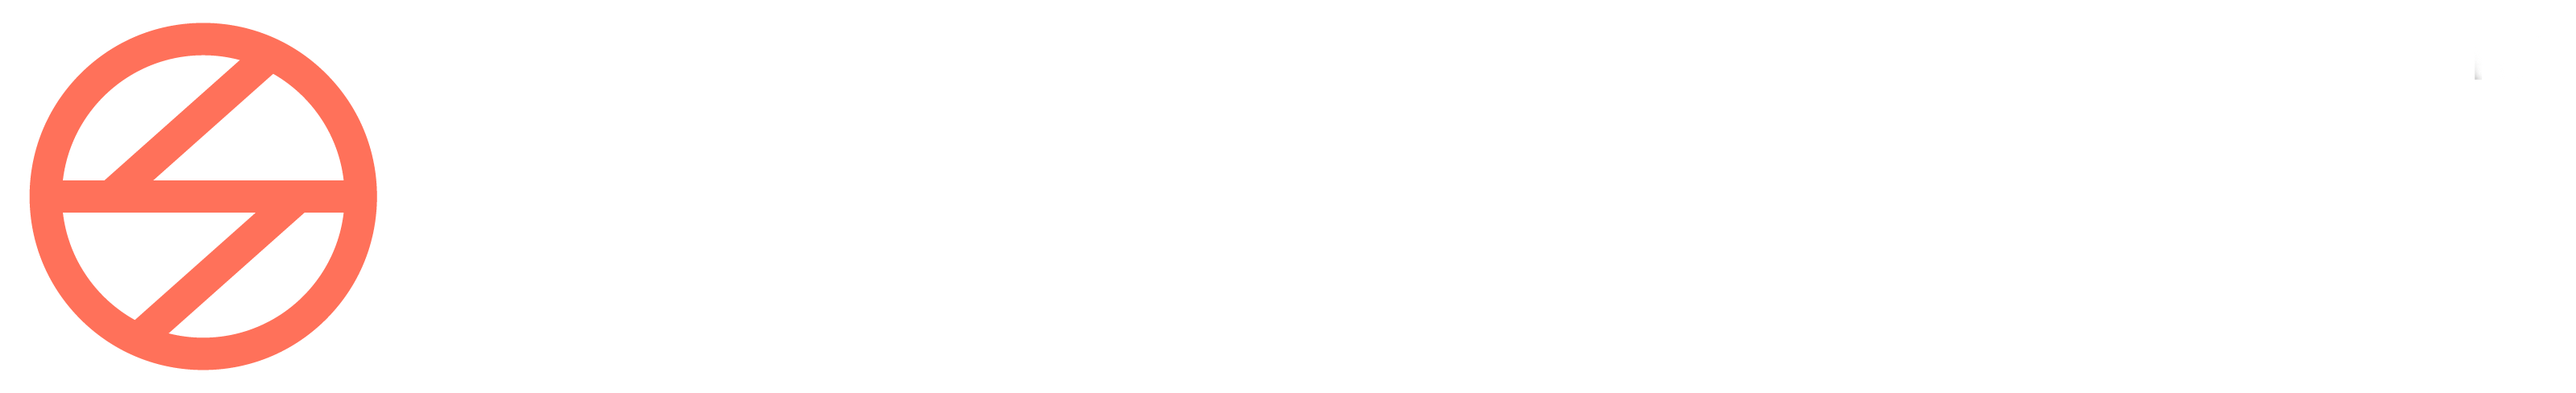 easy tell logo